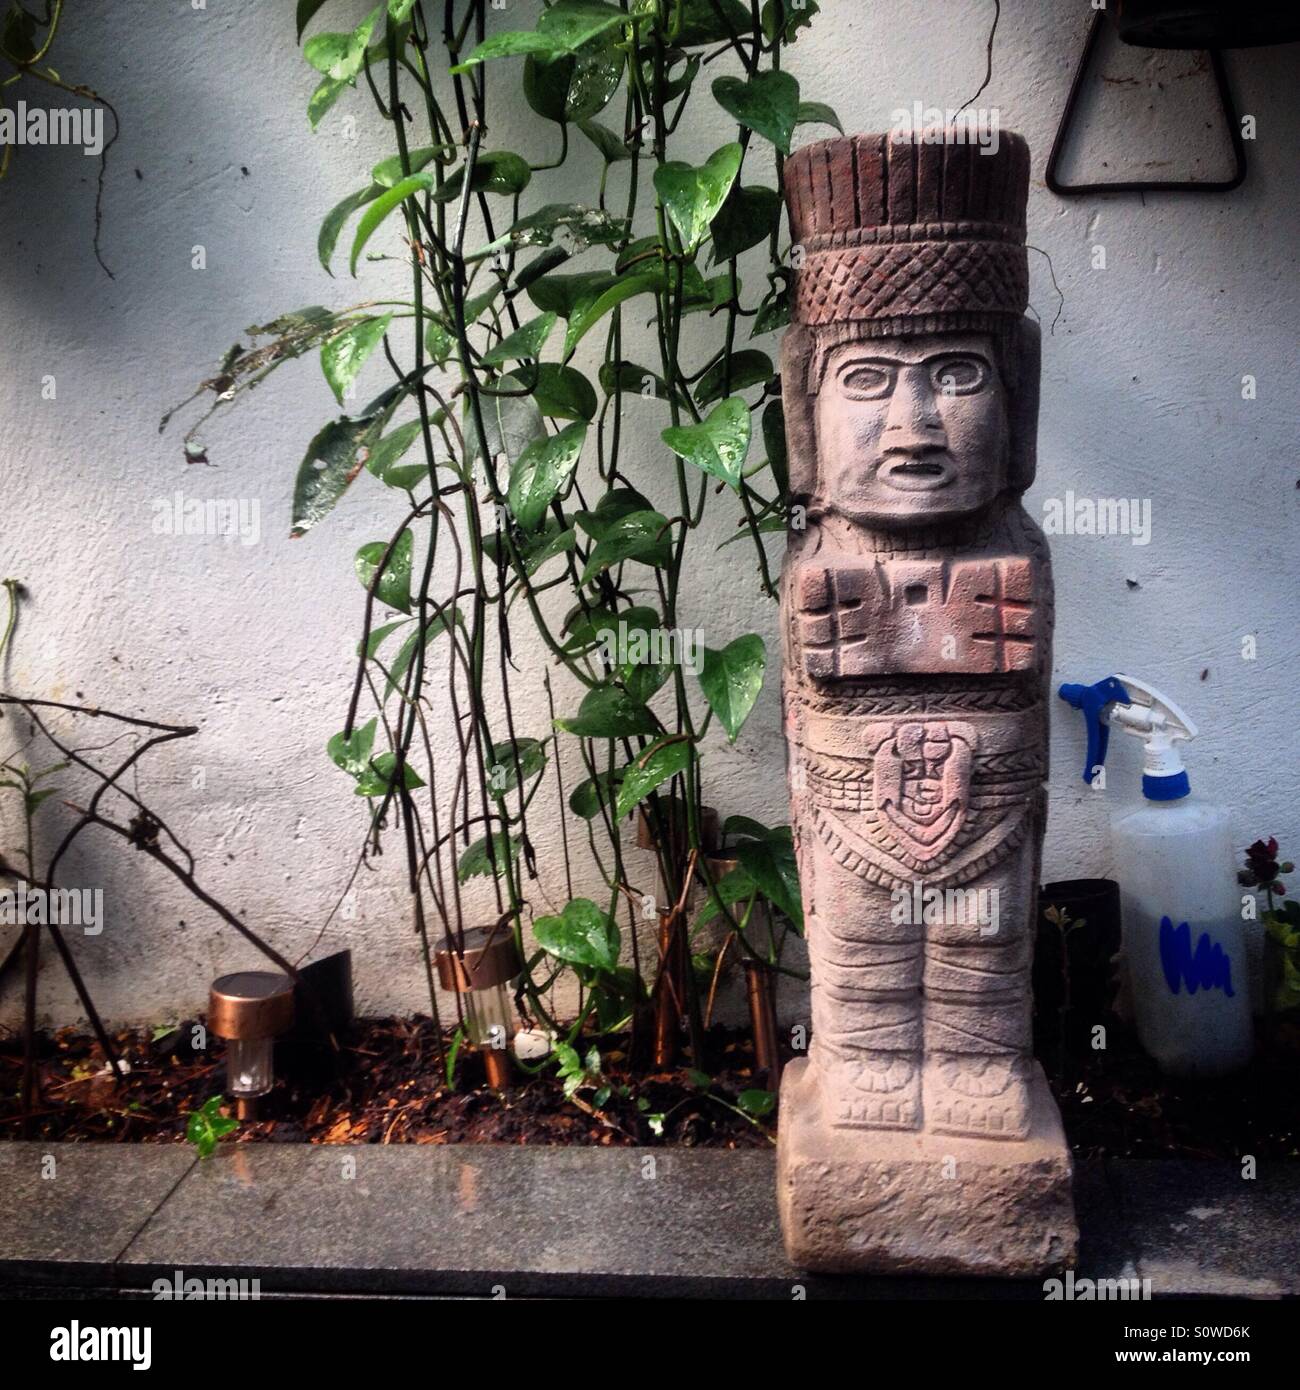 A reproduction of an Atlantean from Mesoamerican city of Tula decorates a garden in Mexico City, Mexico Stock Photo